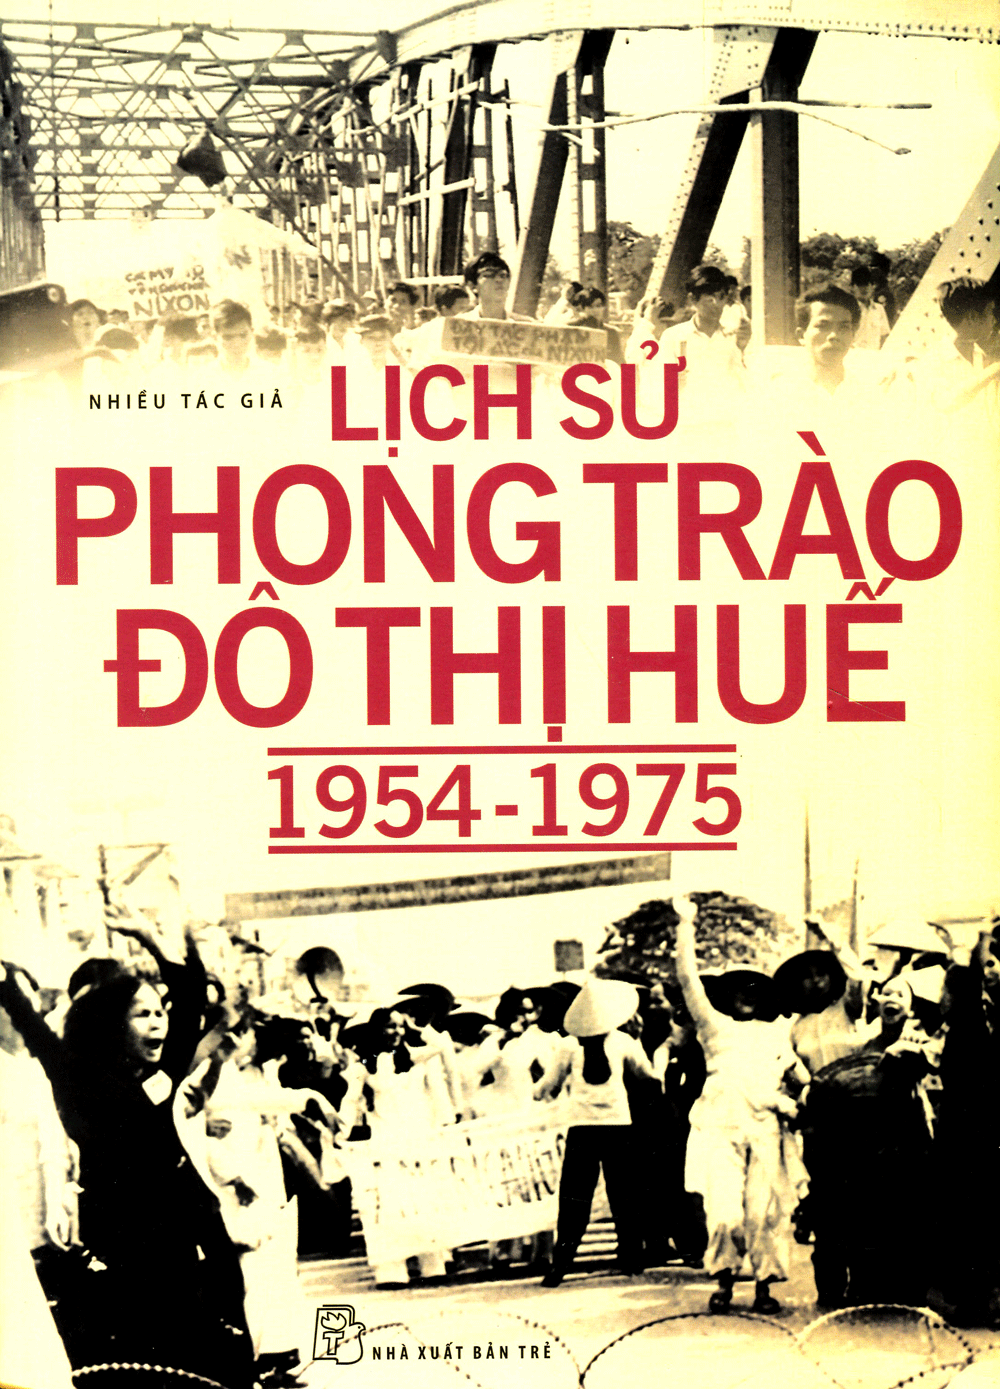 Lịch Sử Phong Trào Đô Thị Huế (1954-1975)